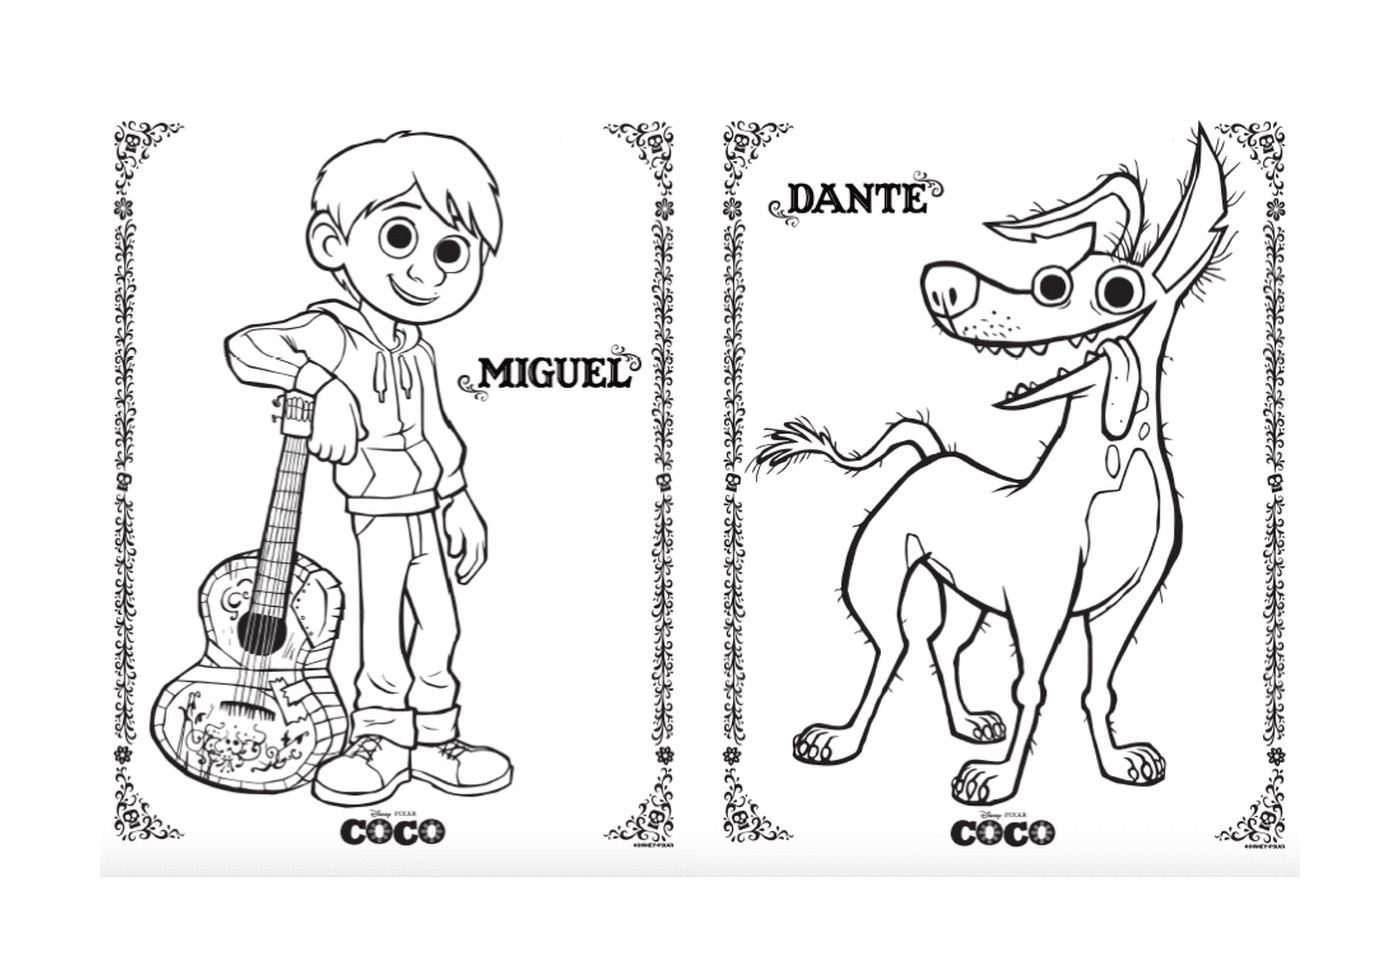  Мигель и Данте Собака, в Дисней Коко Пиксаре 